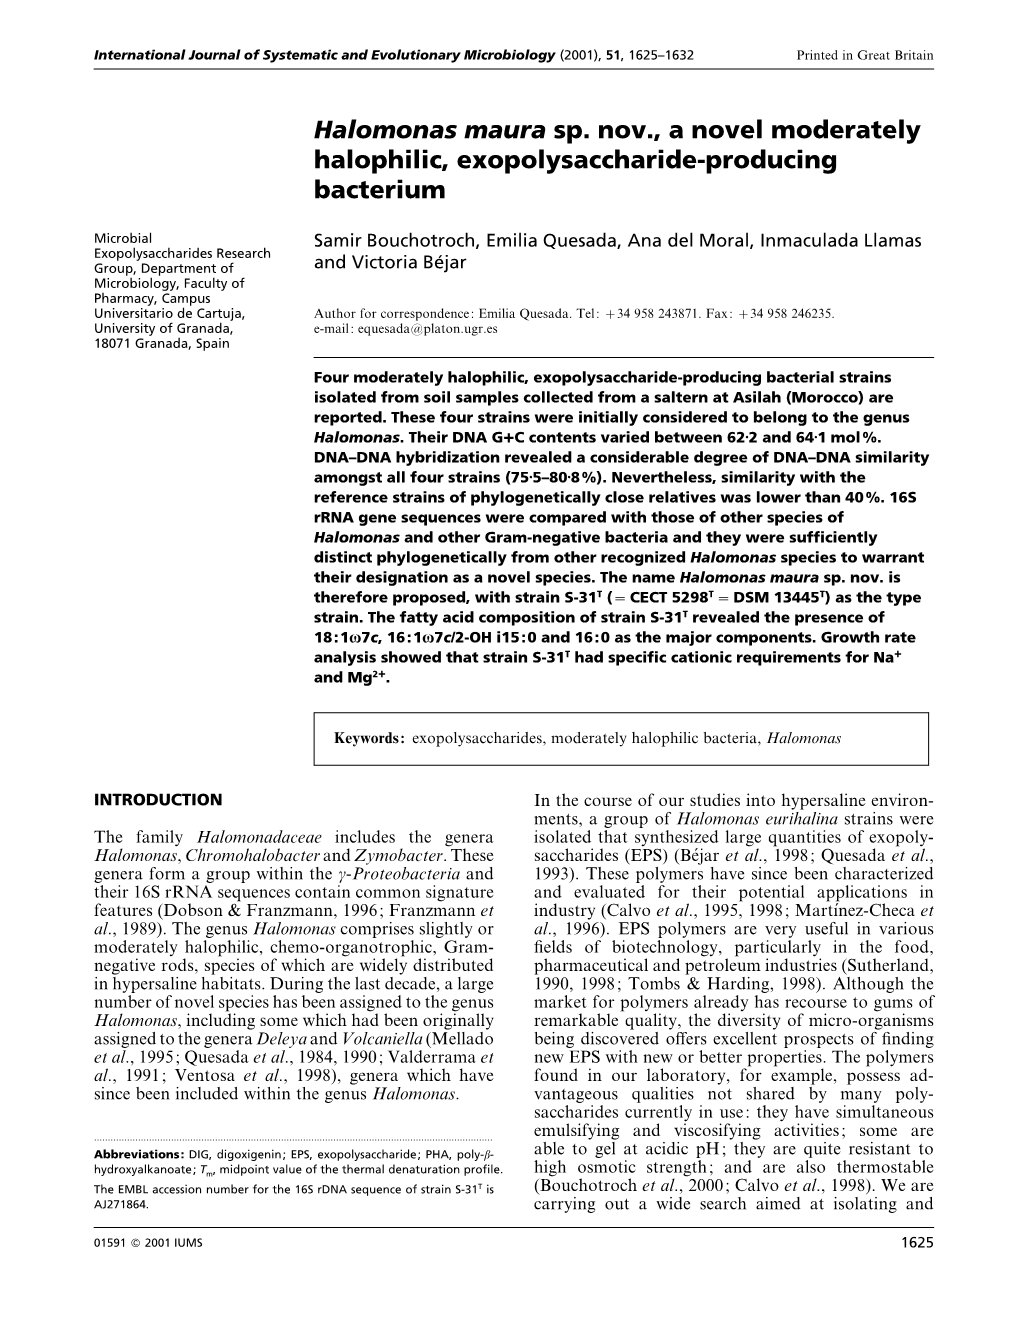 Halomonas Maura Sp. Nov., a Novel Moderately Halophilic, Exopolysaccharide-Producing Bacterium